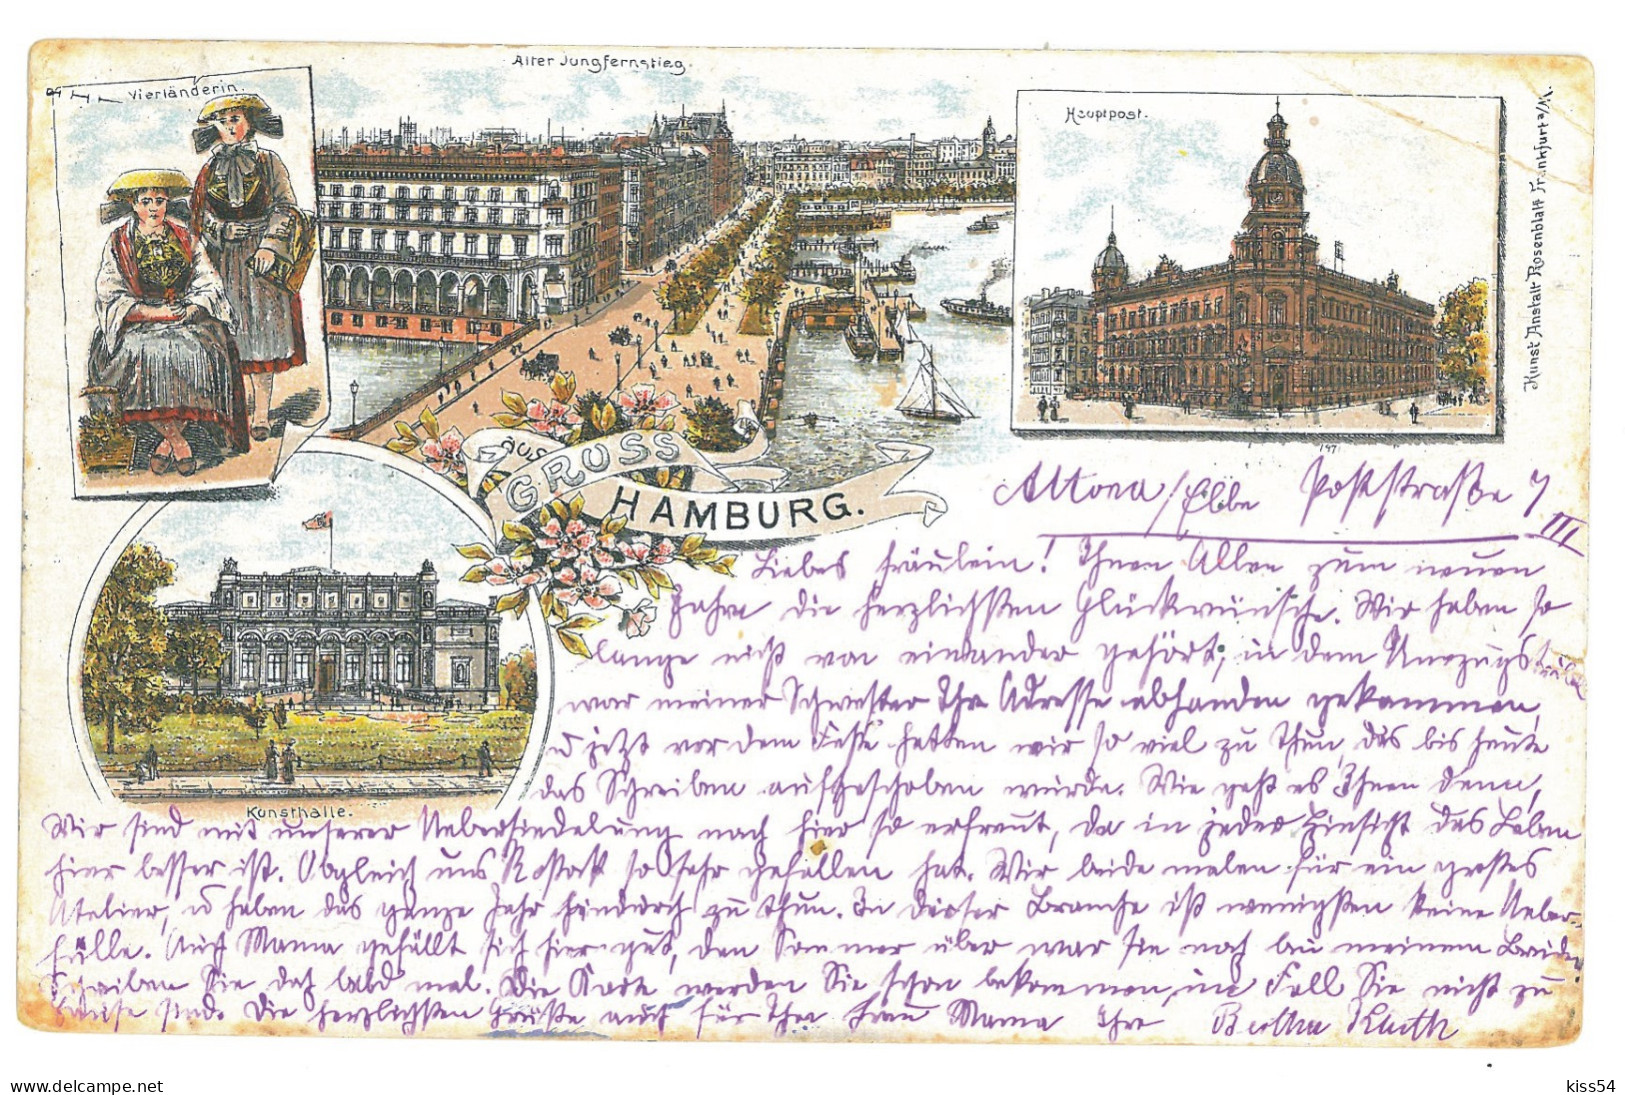 GER 37 - 16931 HAMBURG, Litho, Germany - Old Postcard - Used - 1897 - Harburg